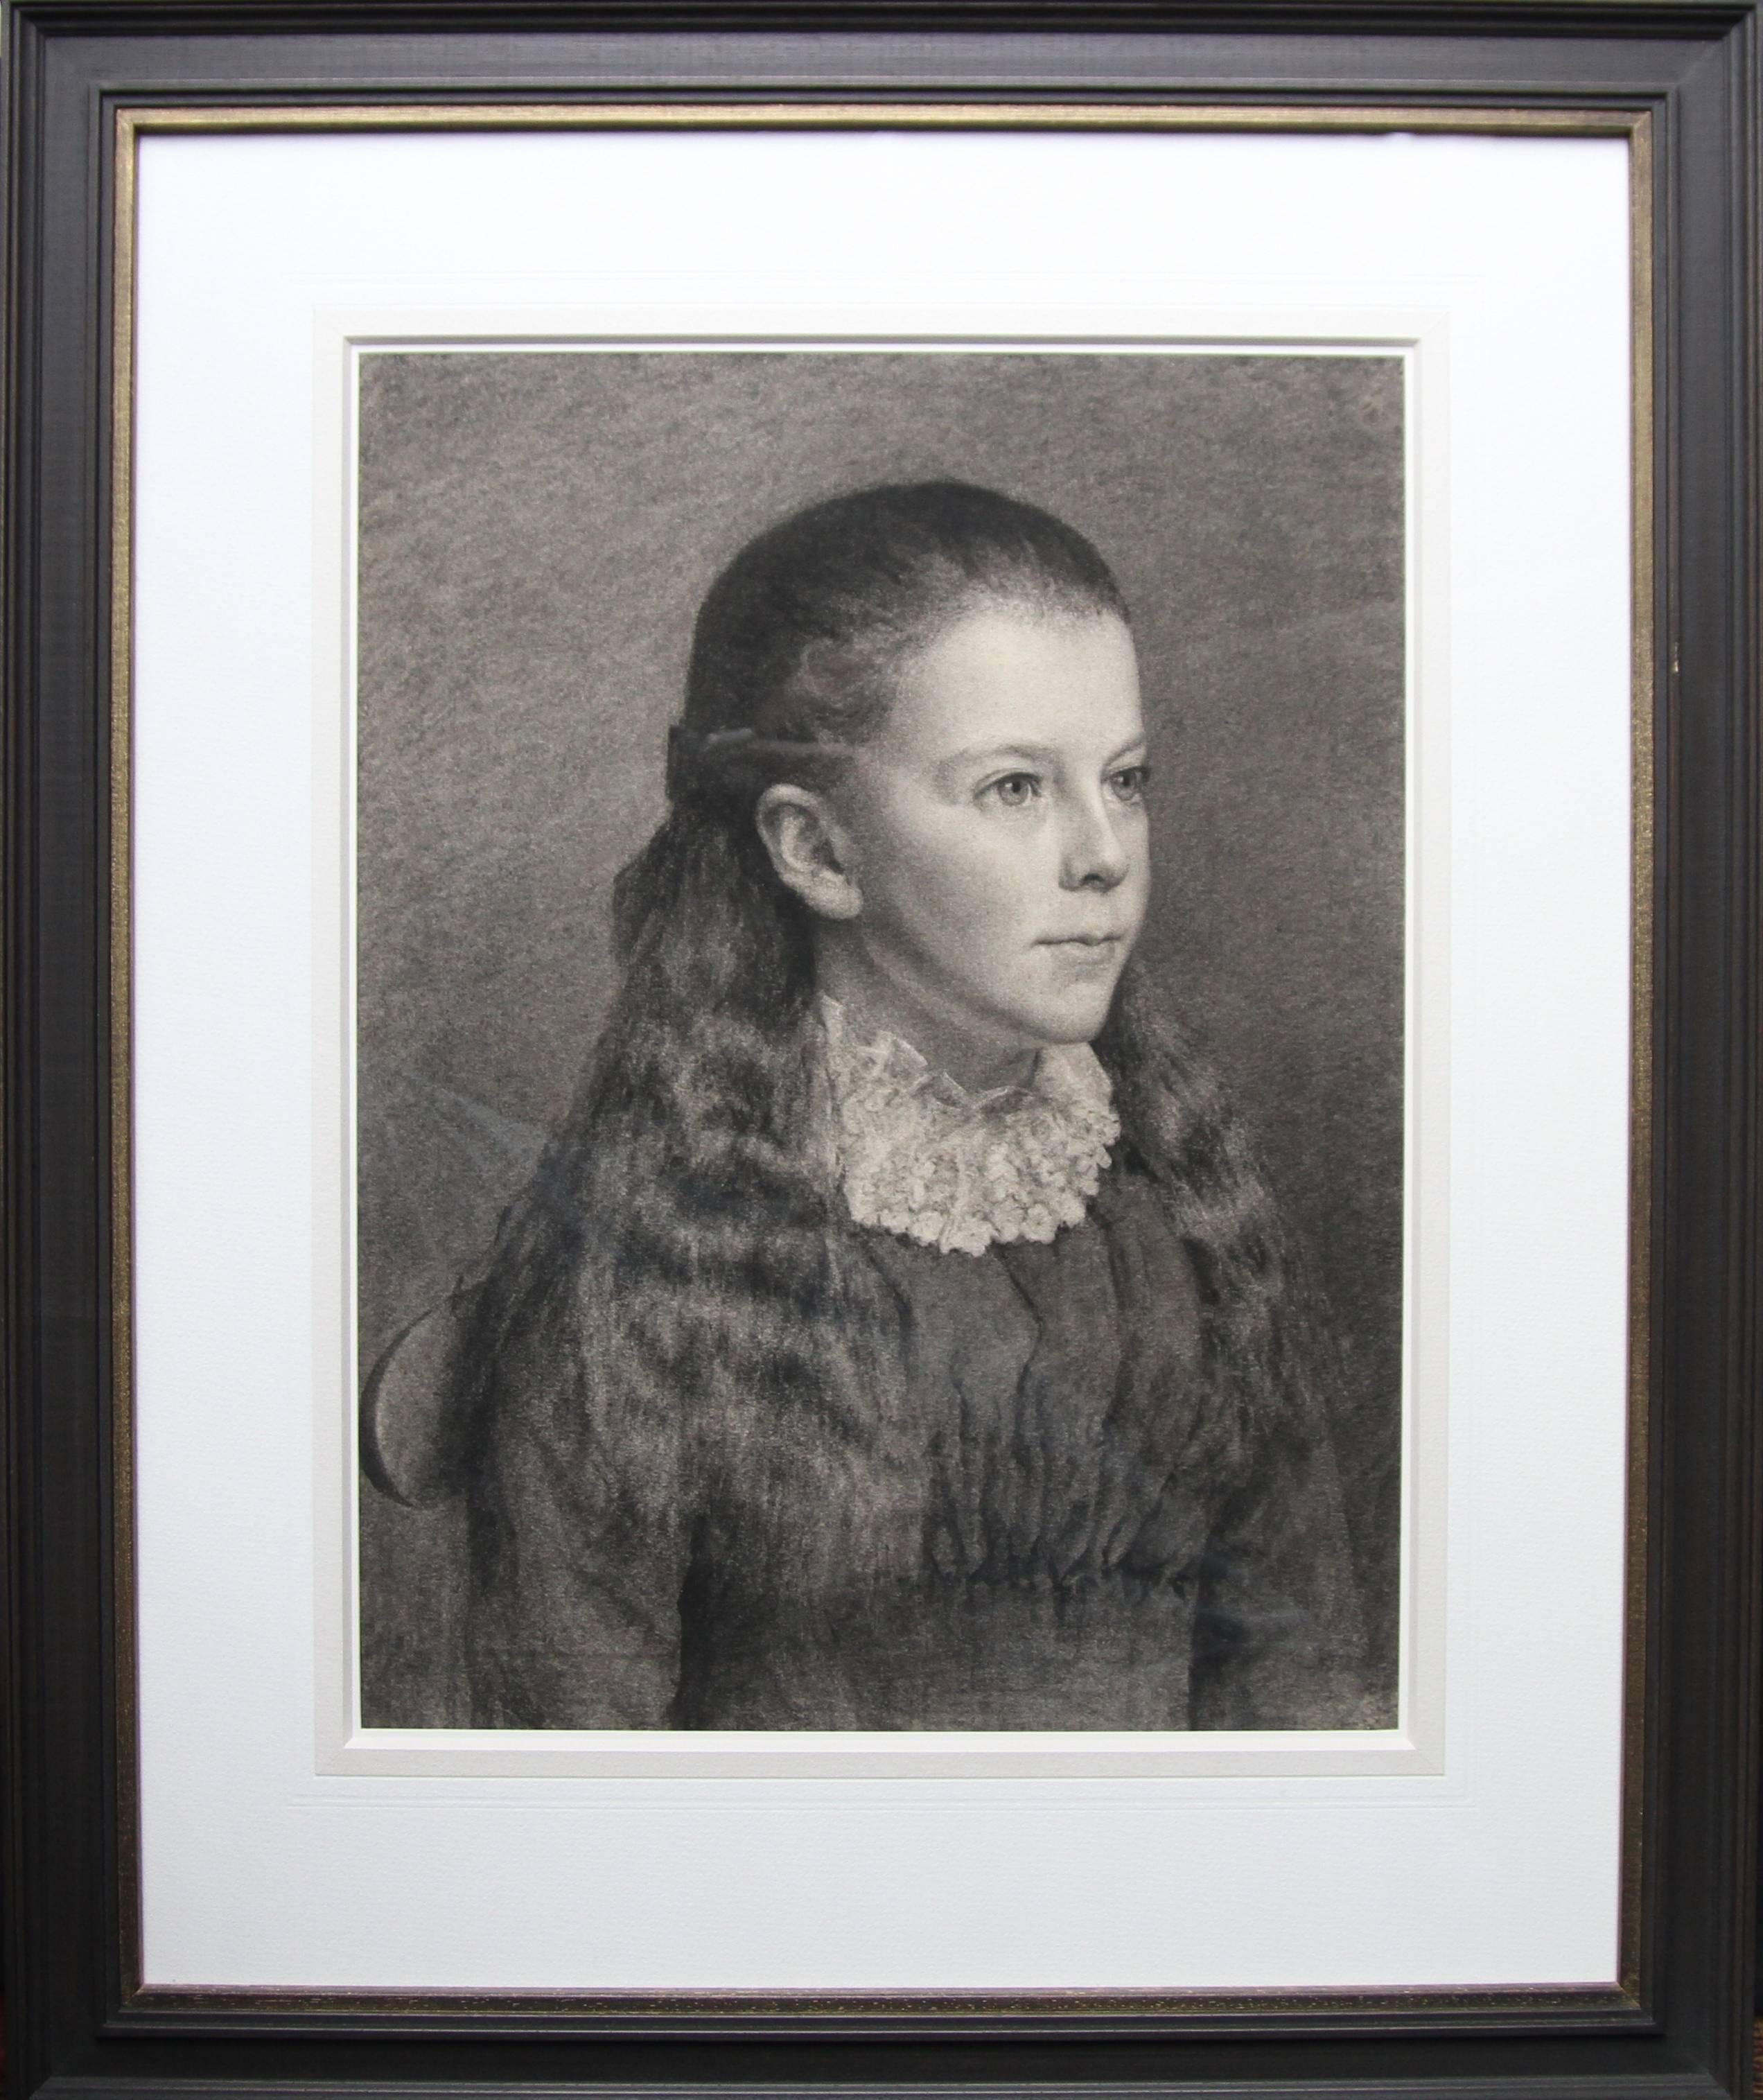 Portrait de jeune fille victorienne britannique préraphaélite, dessin au crayon 